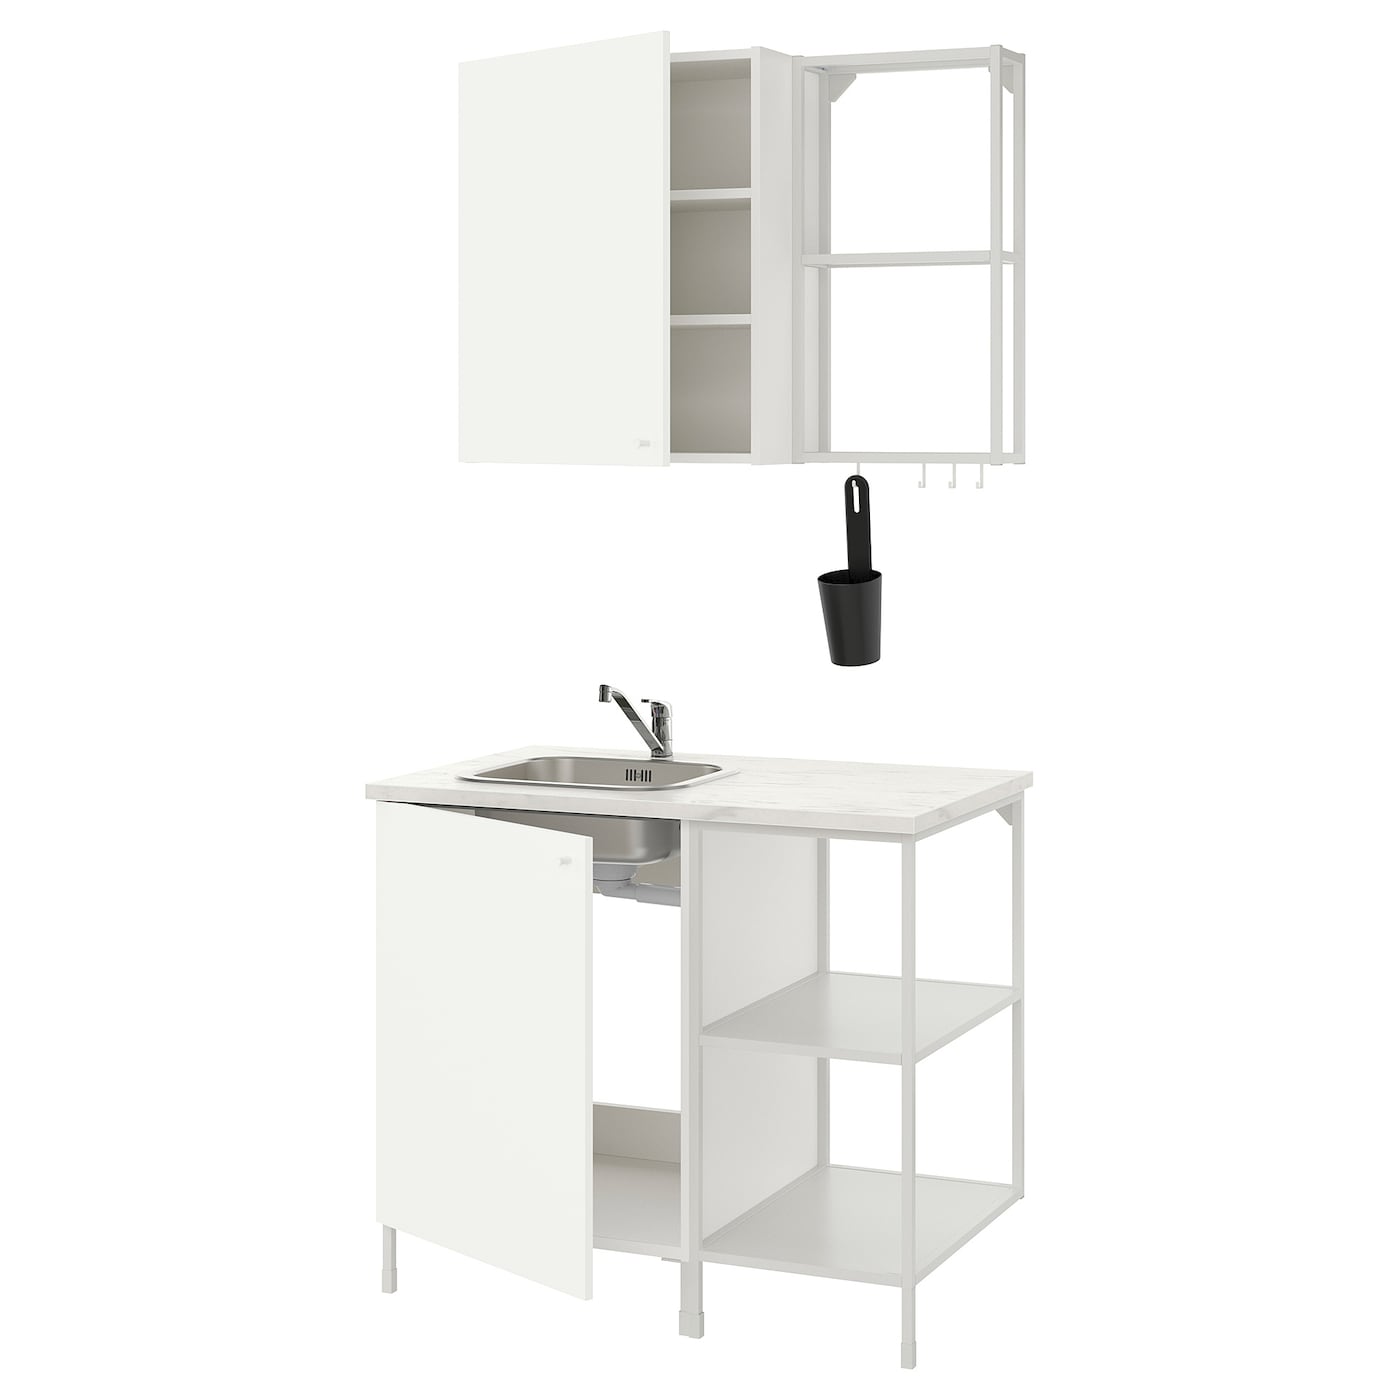 Кухонная комбинация для хранения вещей  - ENHET  IKEA/ ЭНХЕТ ИКЕА, 103x63,5x222 см, белый